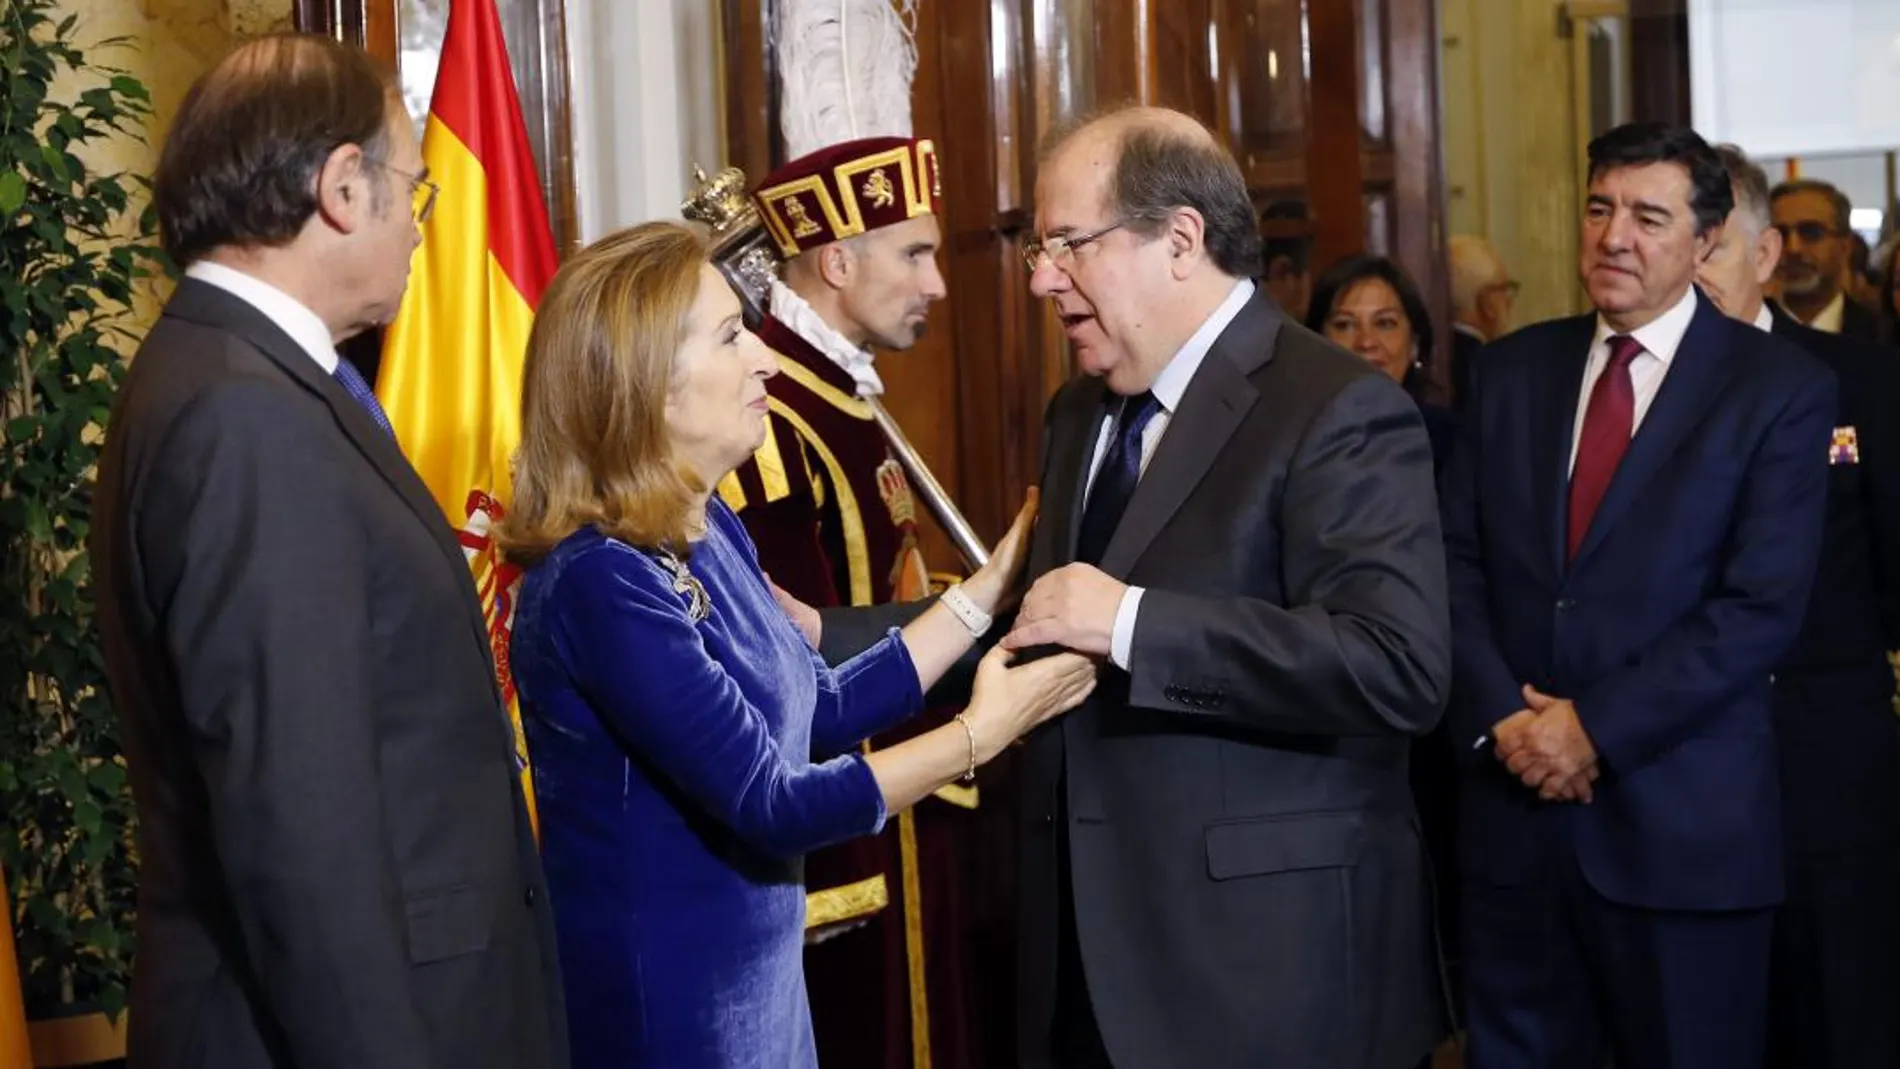 Juan Vicente Herrera saluda a la presidenta del Congreso de los Diputados, Ana Pastor, en presencia del presidente del Senado, Pío García Escudero y José Antonio Bermúdez de Castro